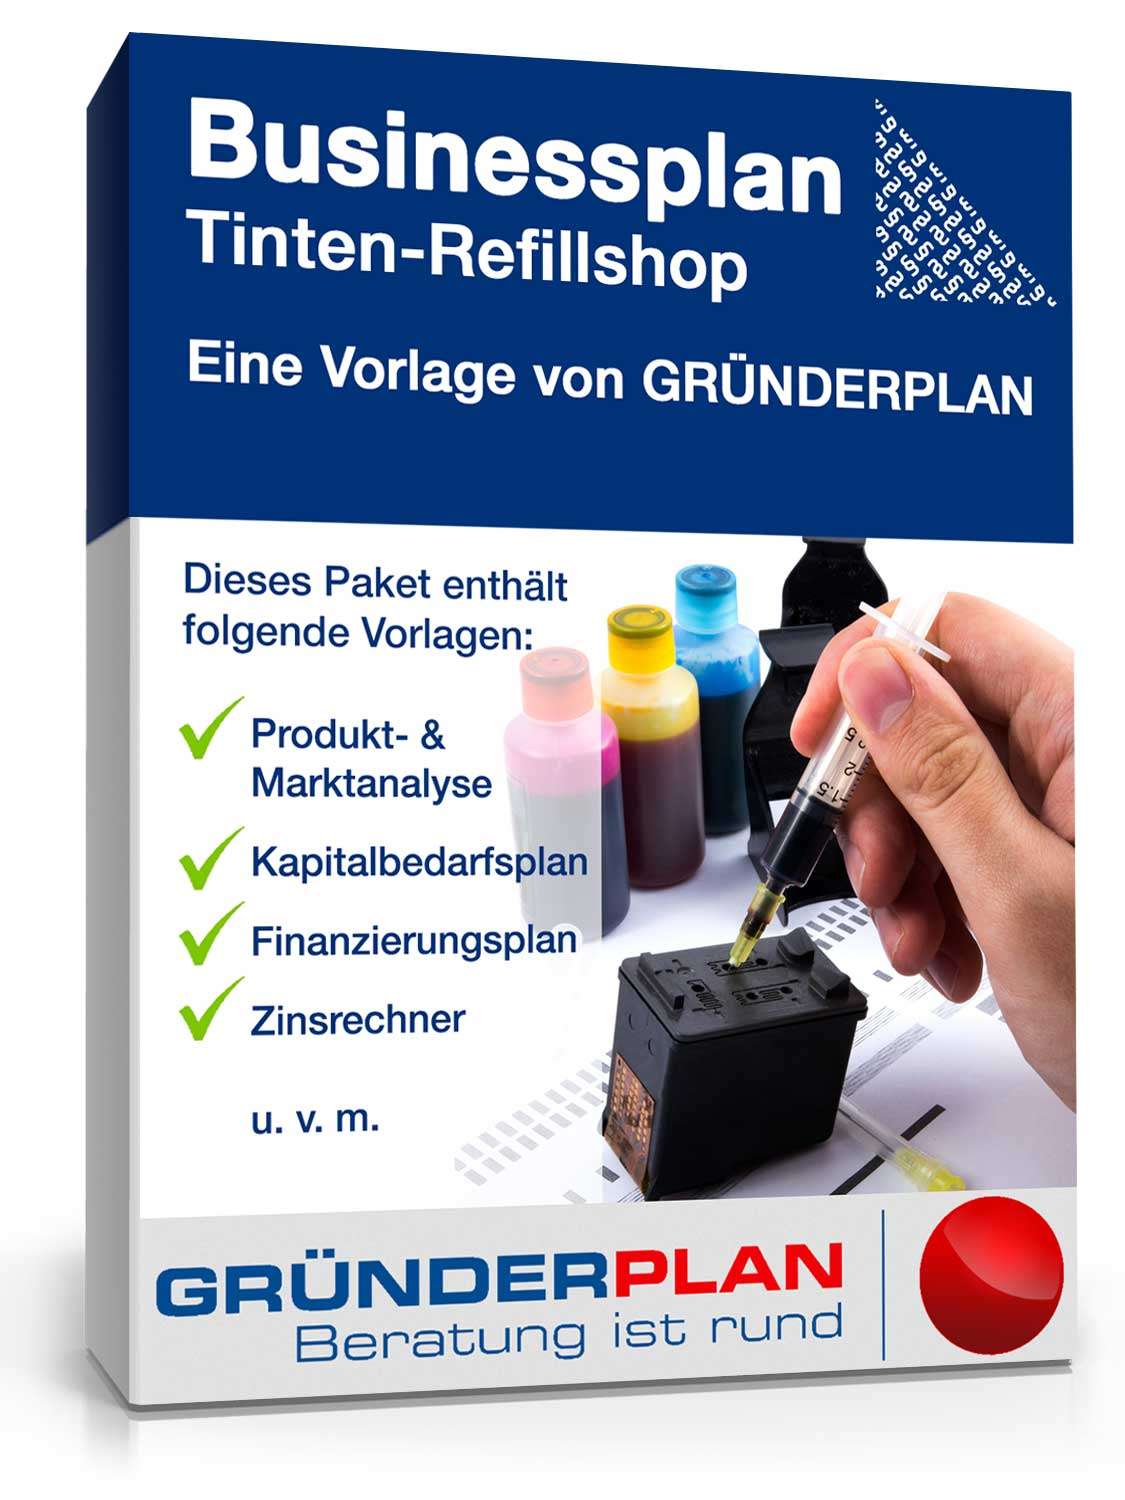 Hauptbild des Produkts: Businessplan Tinten-Refillshop von Gründerplan